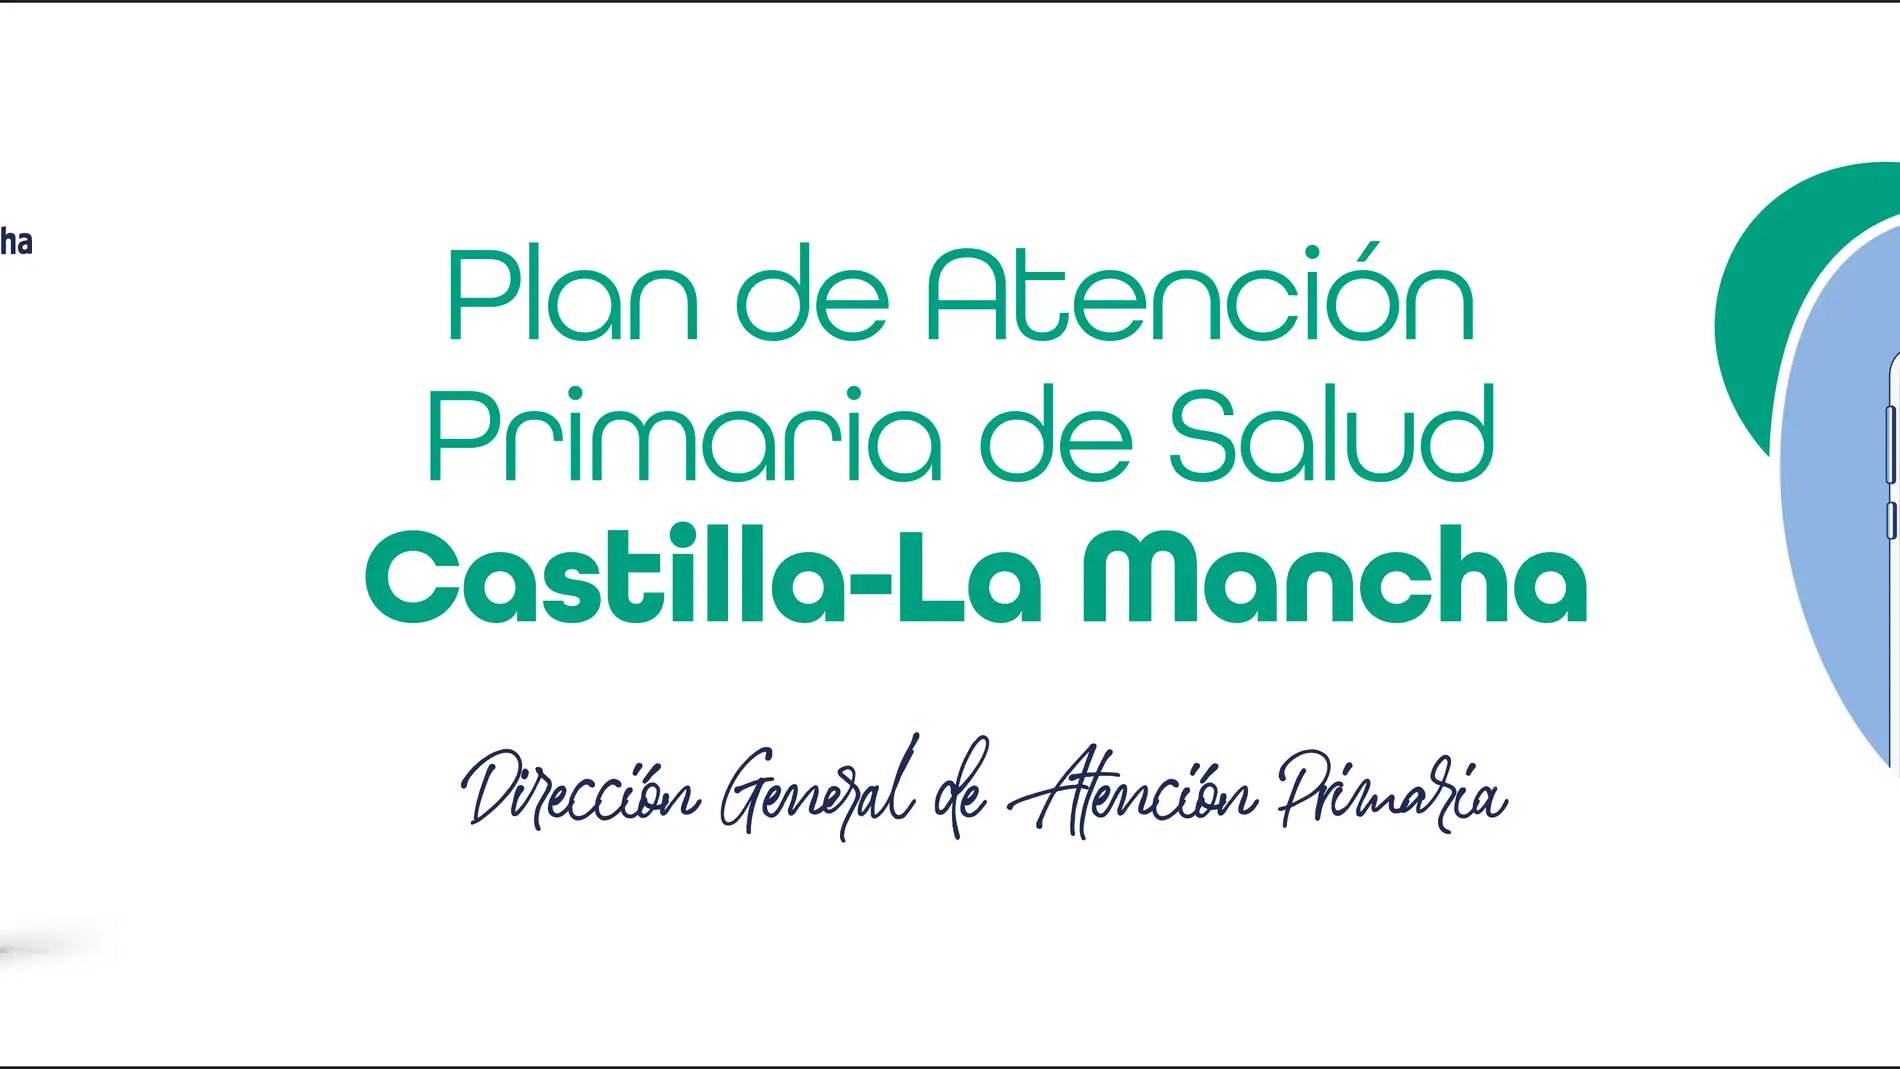 Abierto a la participación ciudadana el Plan de Atención Primaria de Castilla-La Mancha